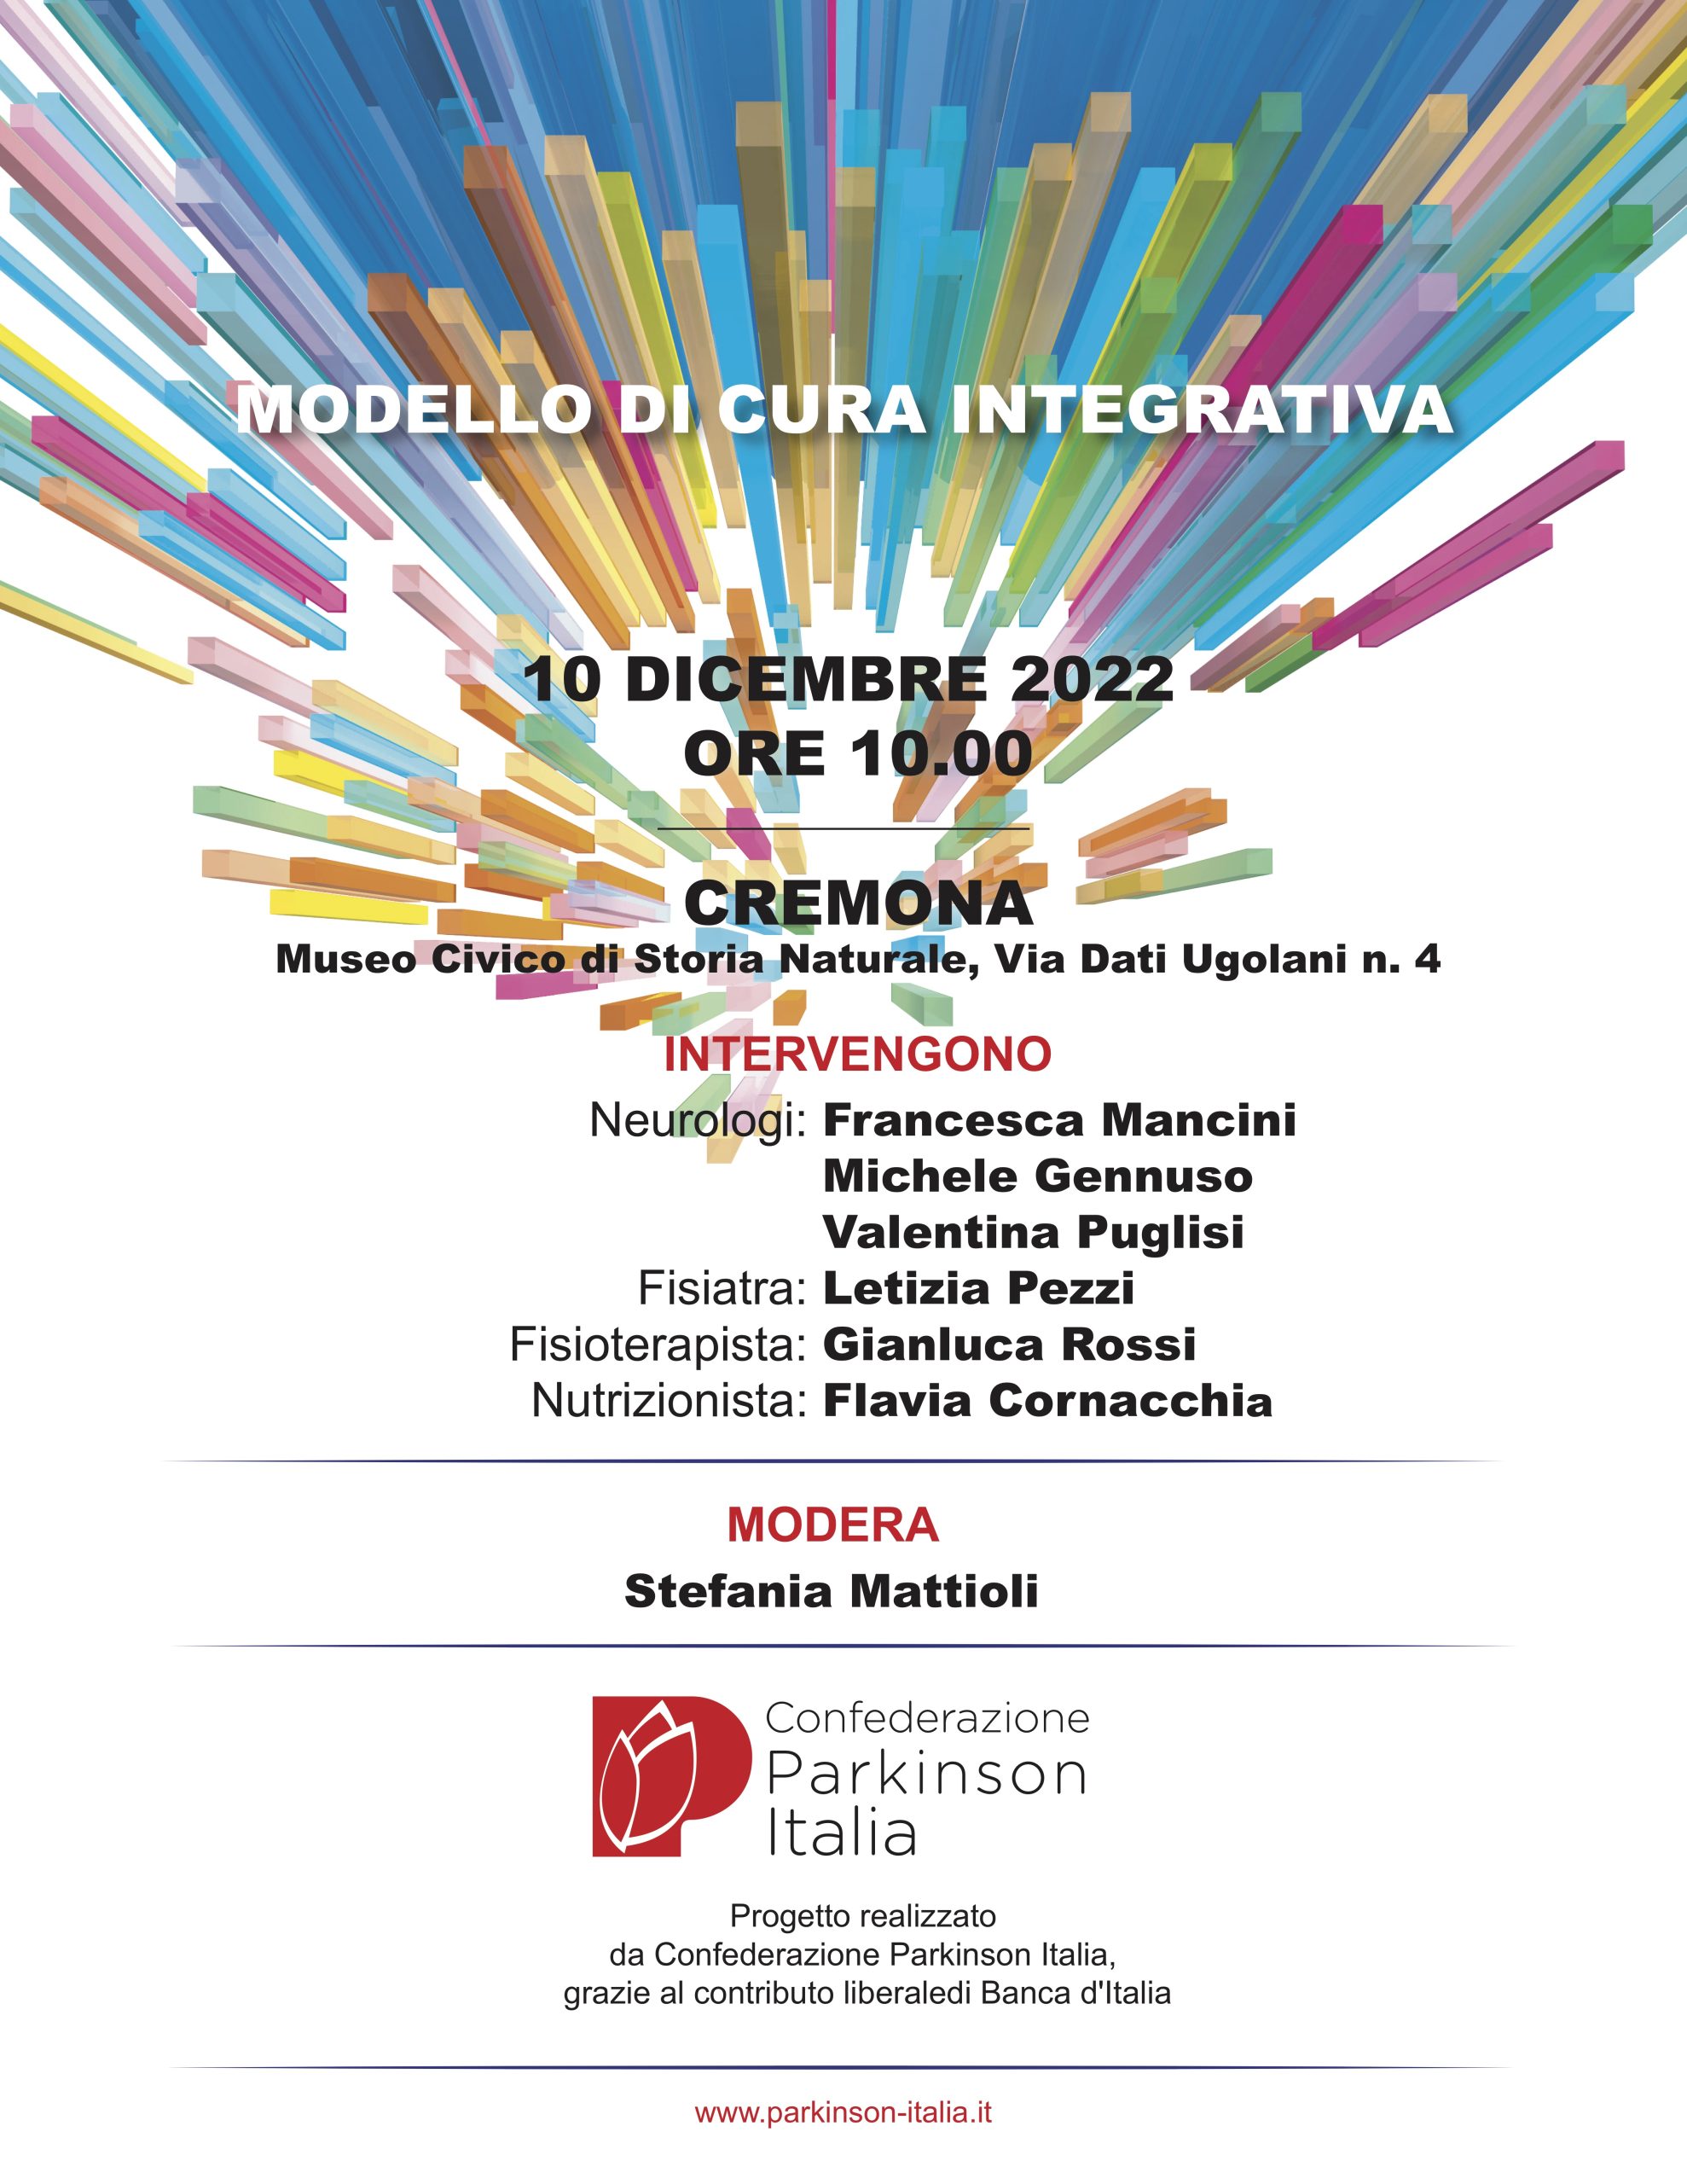 Convegno “Modello di Cura Integrativa” a Cremona il 10 dicembre 2022